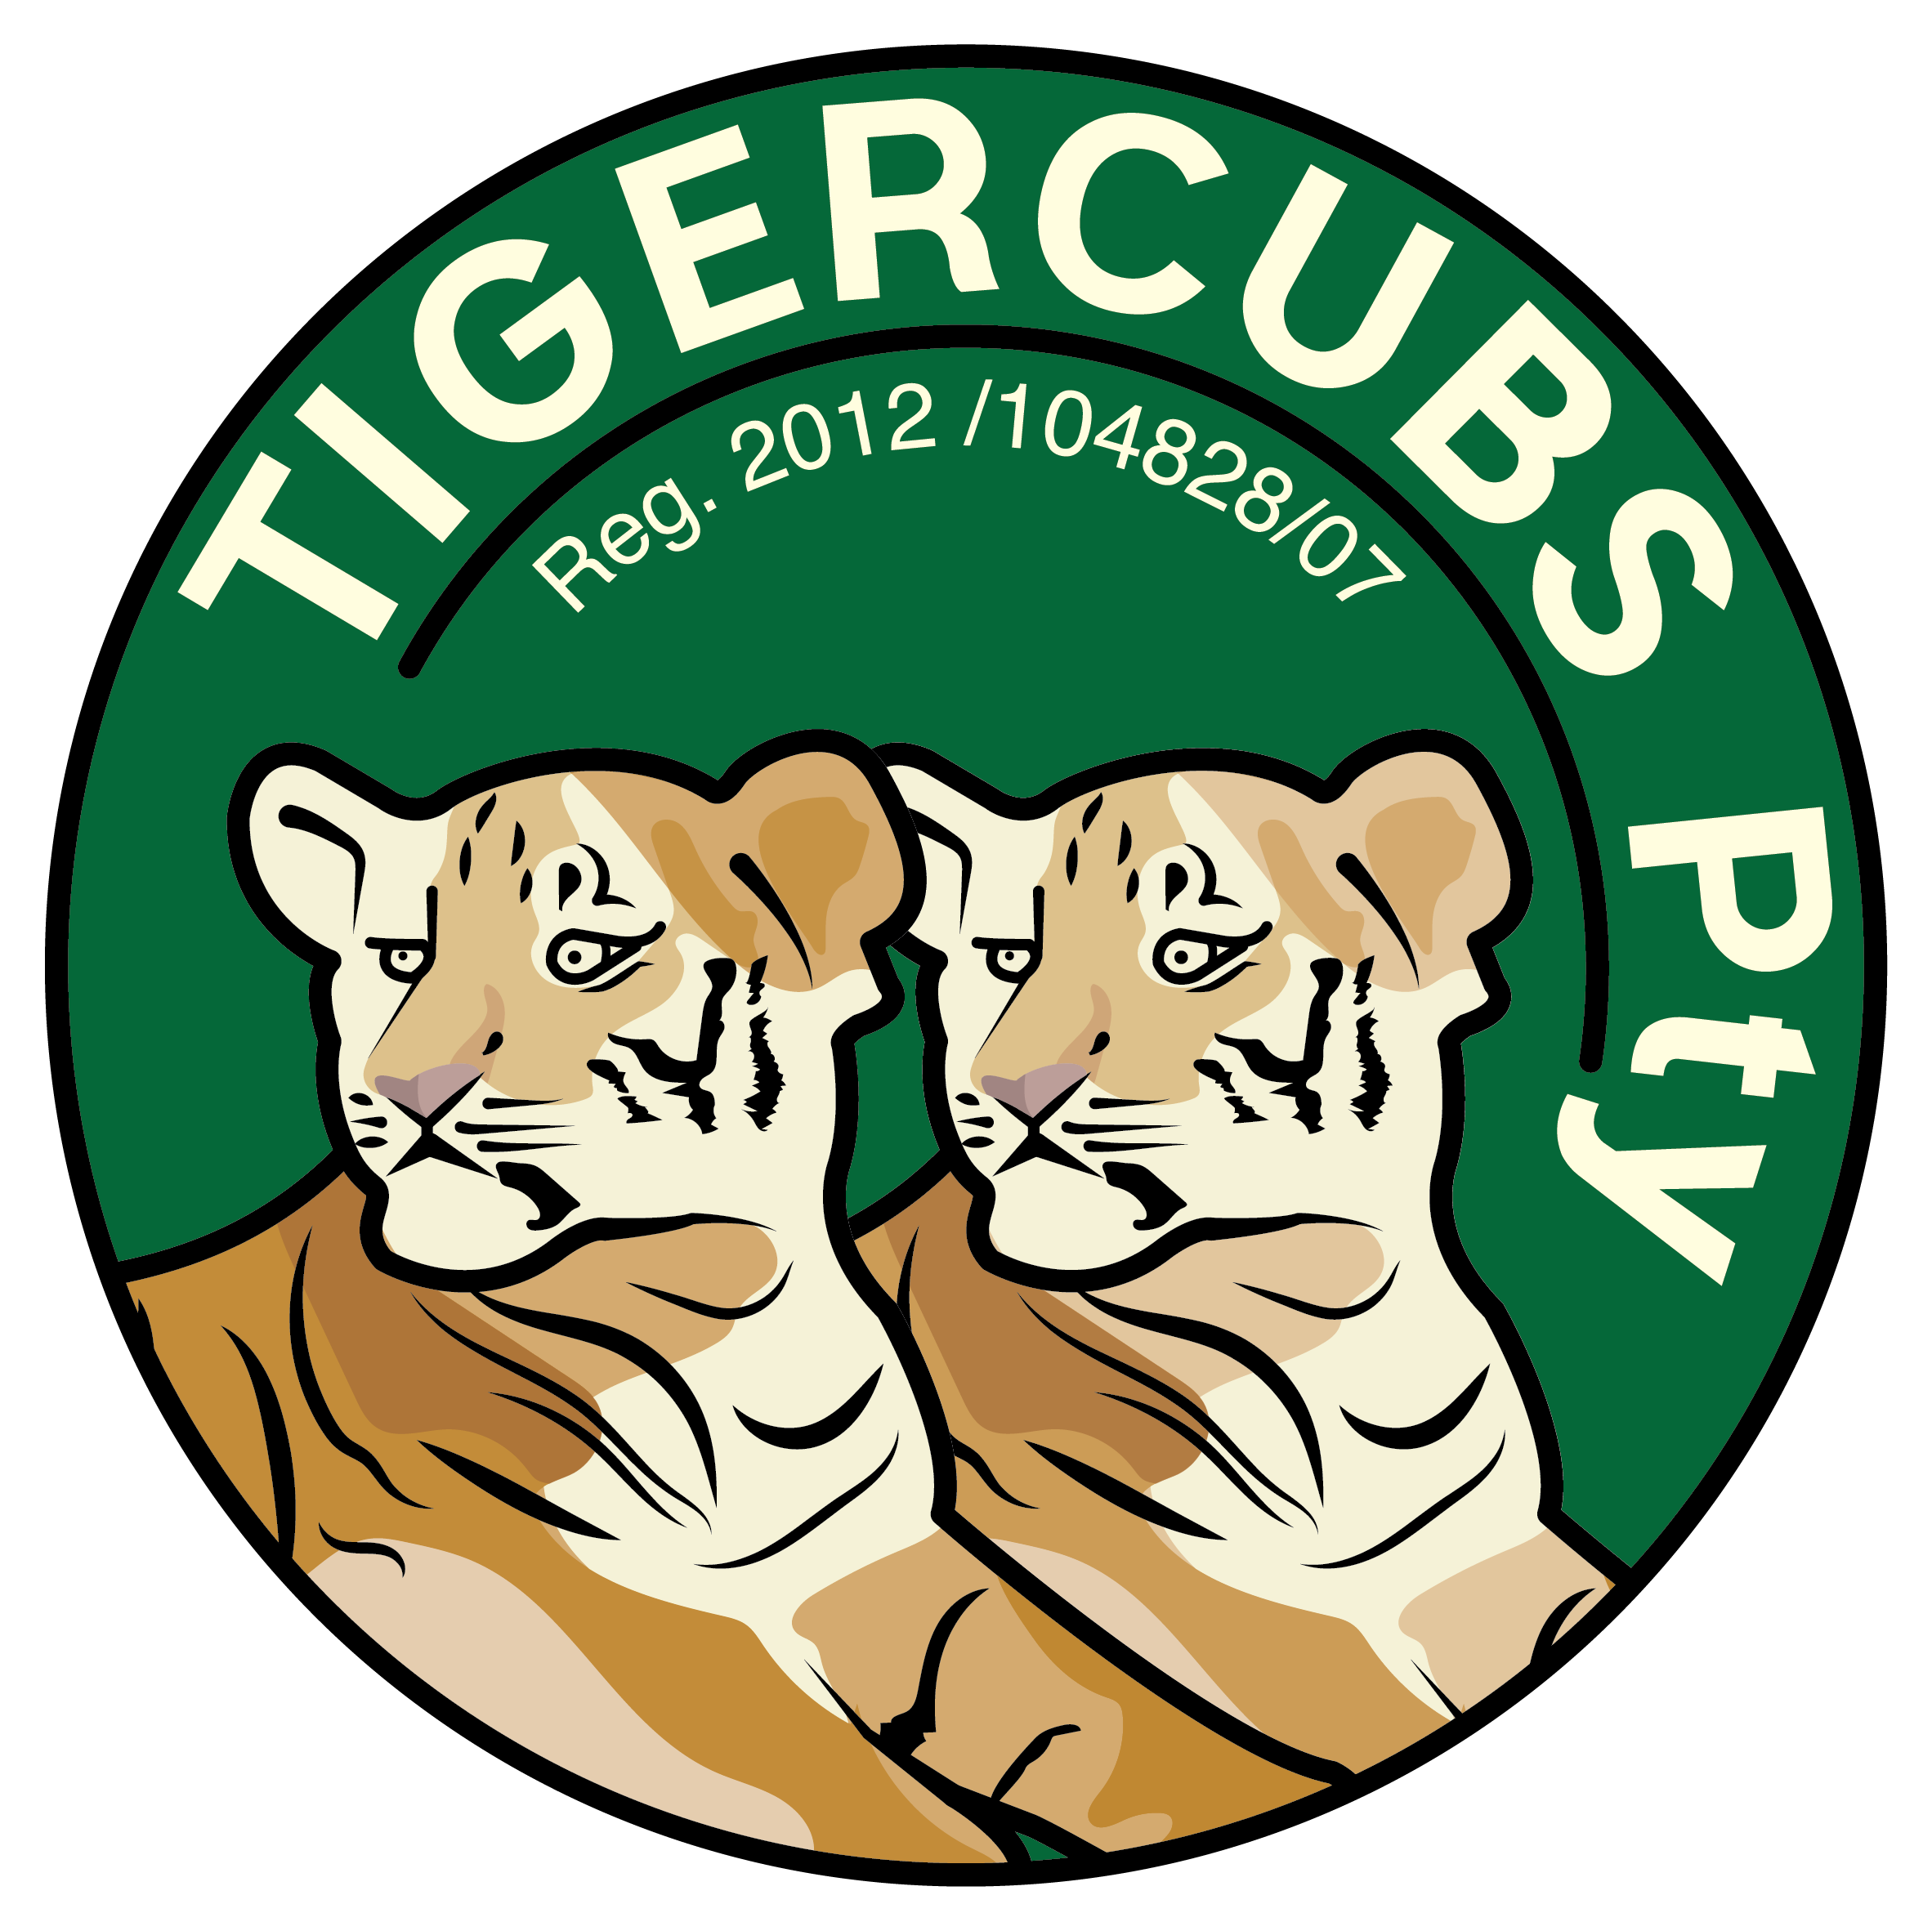 Tigercubs logo